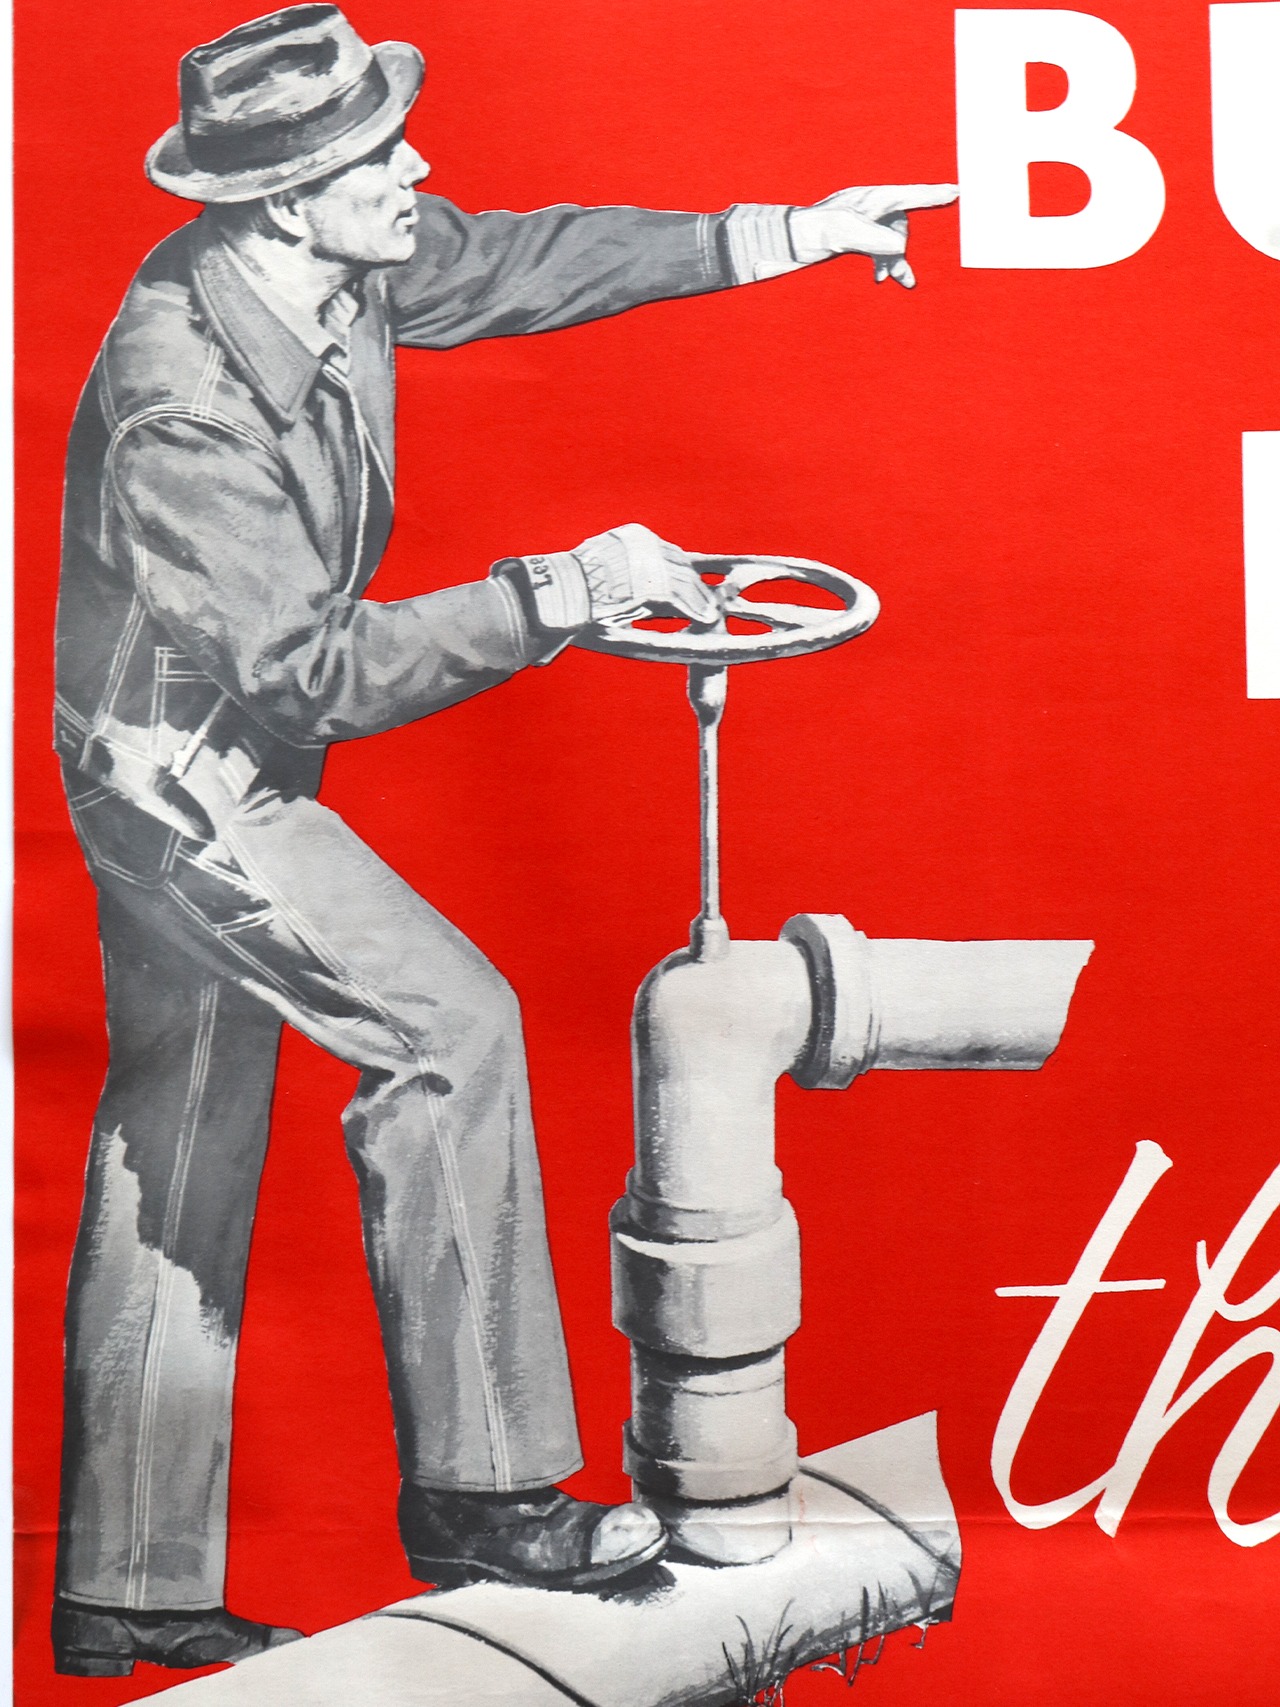 Lee Dealer Poster 1950